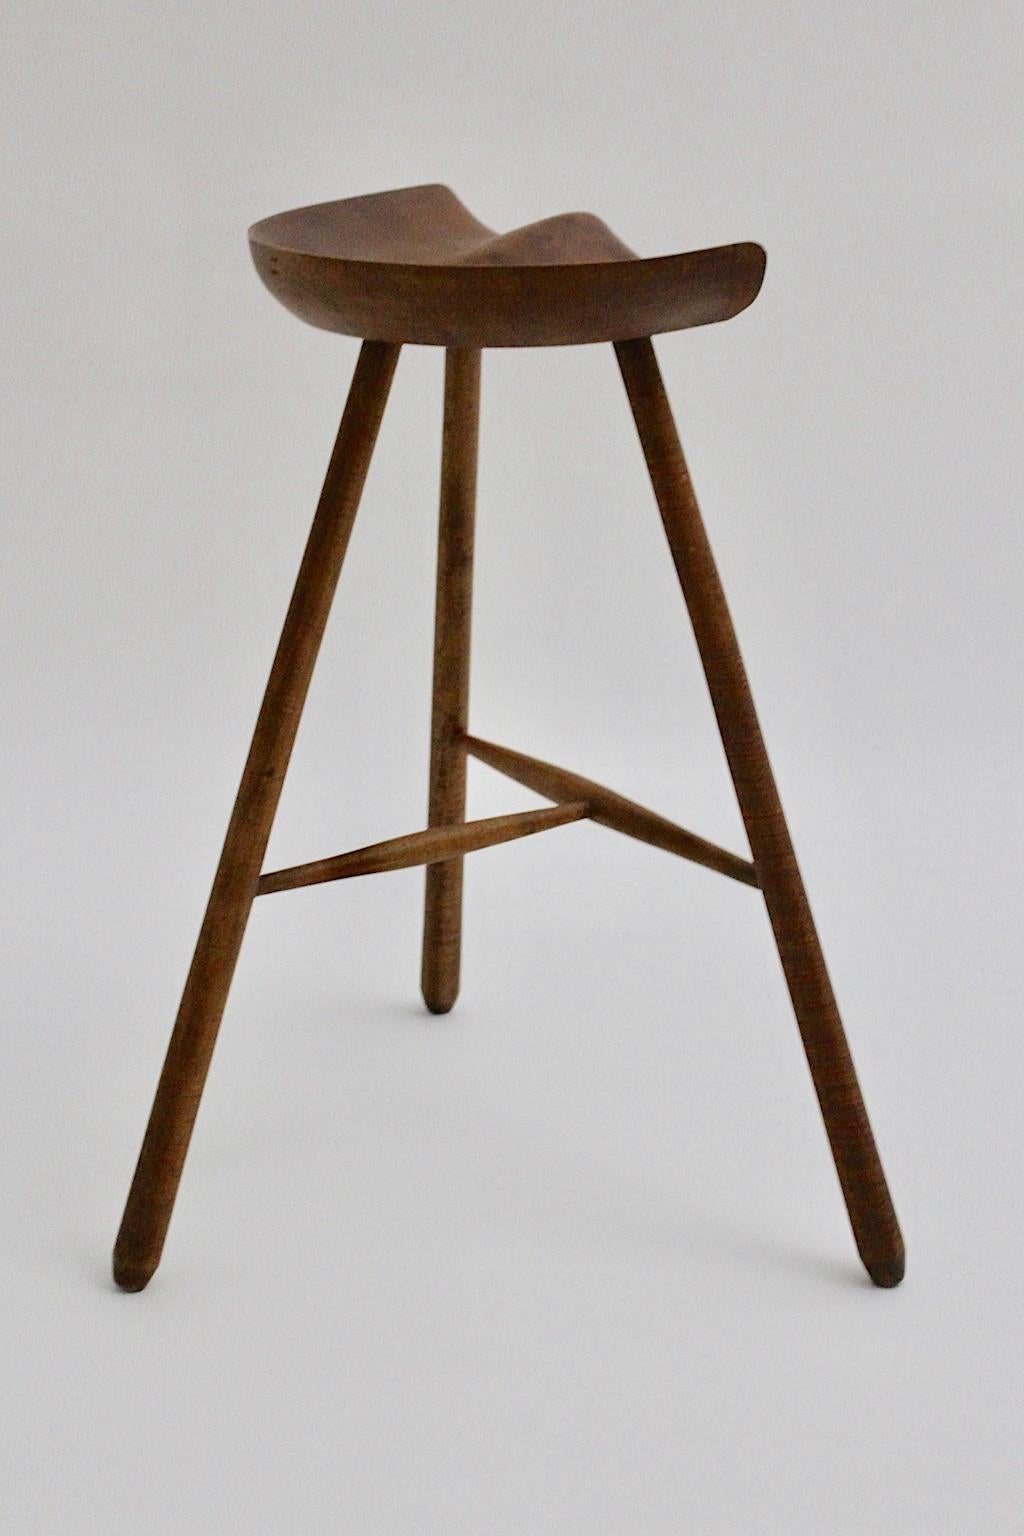 Scandinavian Modern Vintage Brown Teak Stool by Arne Hovmand-Olsen 1960s Denmark For Sale 2